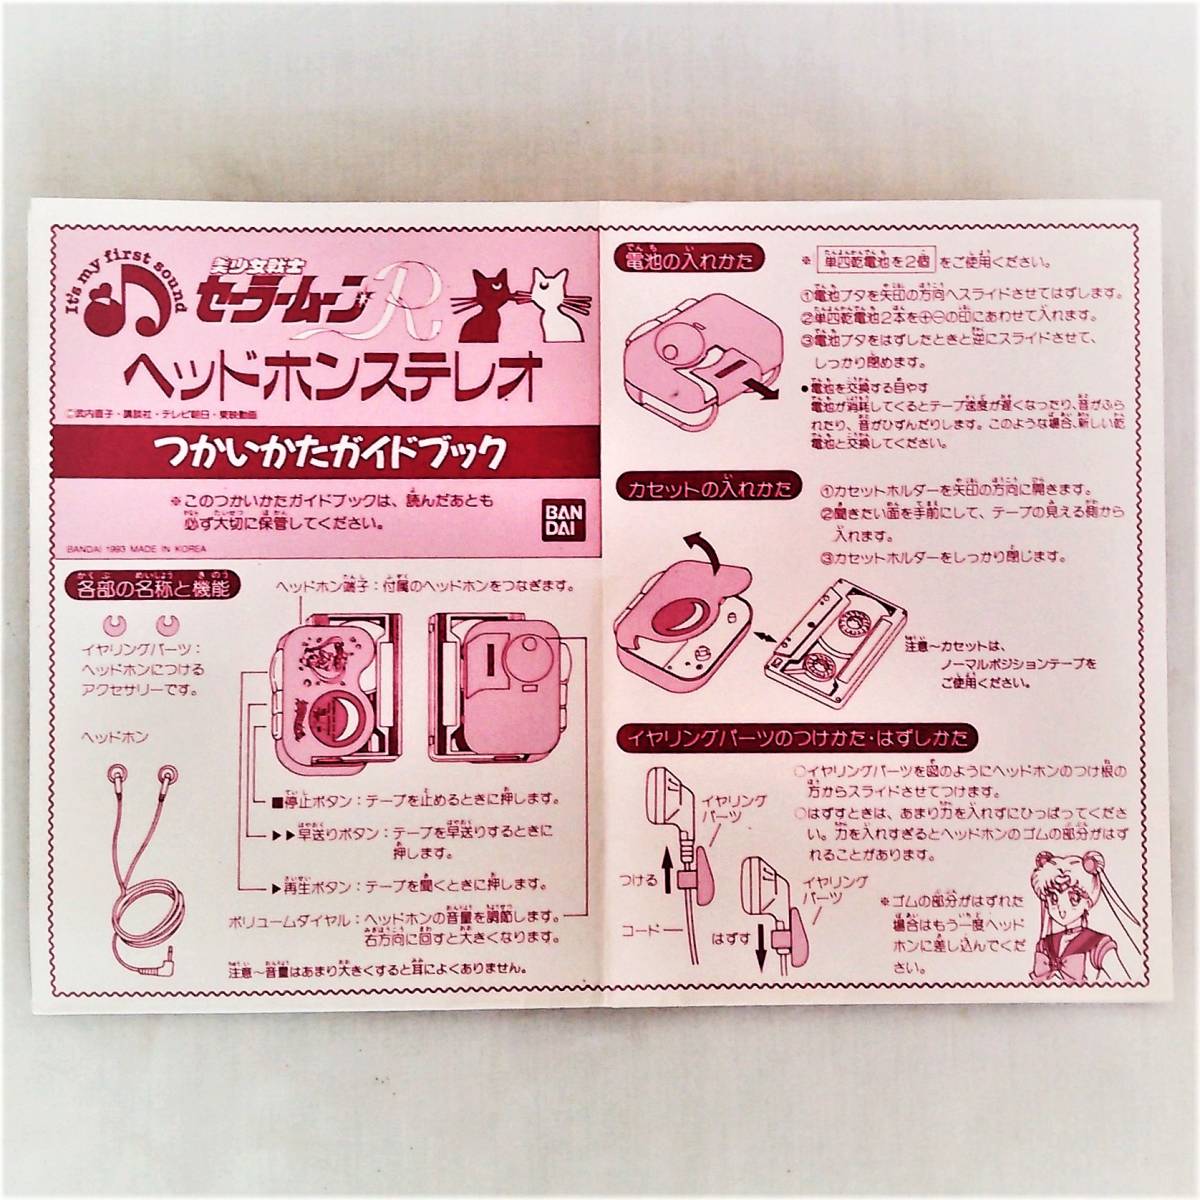 * Bishoujo Senshi { headphone stereo }(1993 year / Bandai )( box attaching * new goods )*